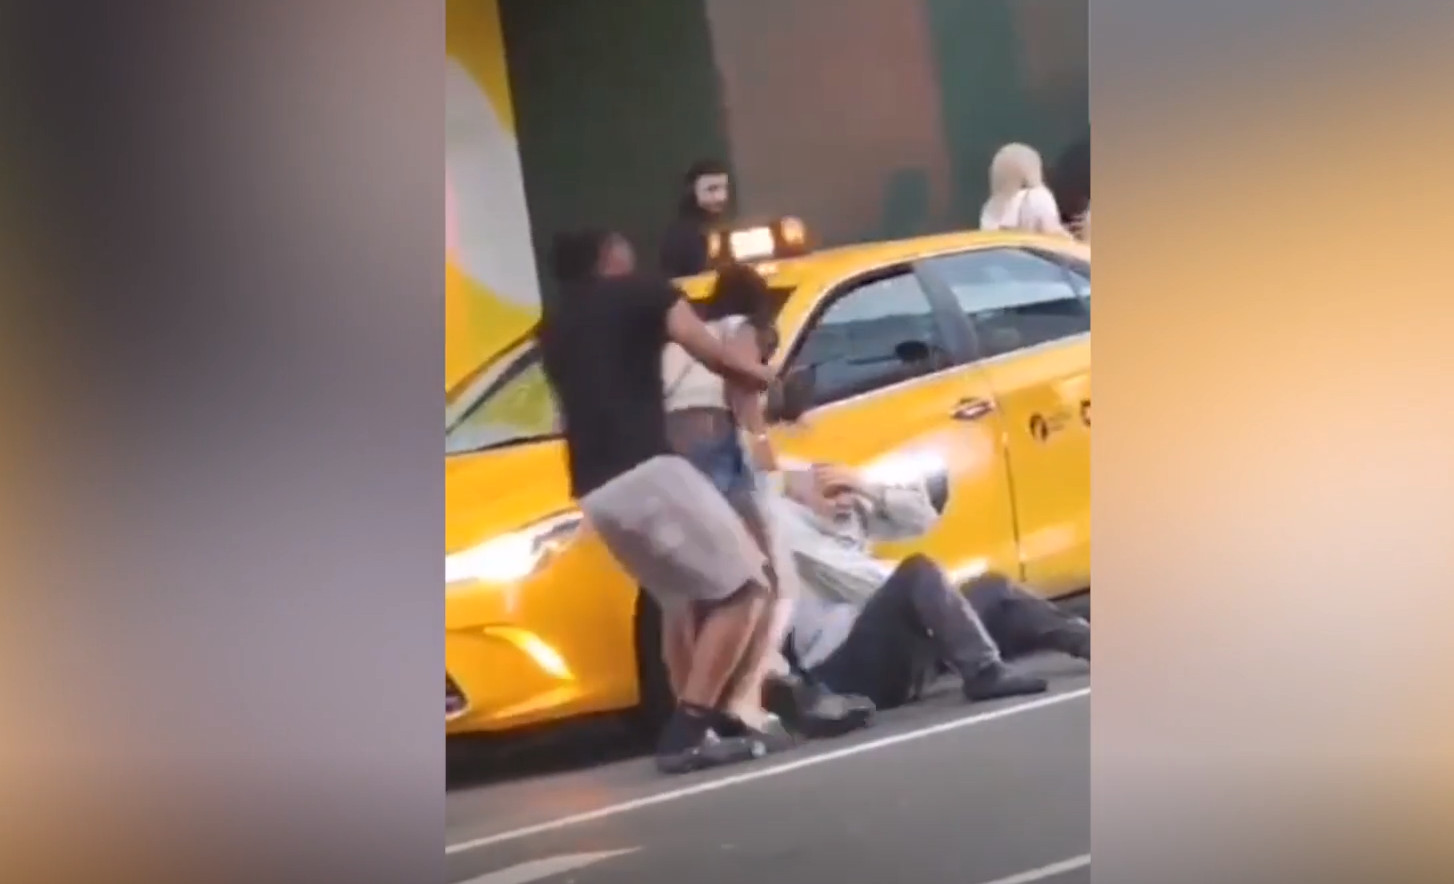 Νέα Υόρκη: Οδηγός ταξί δέχτηκε άγρια επίθεση από πέντε άτομα σε κεντρικό δρόμο - Δεν επενέβη κανείς για βοήθεια